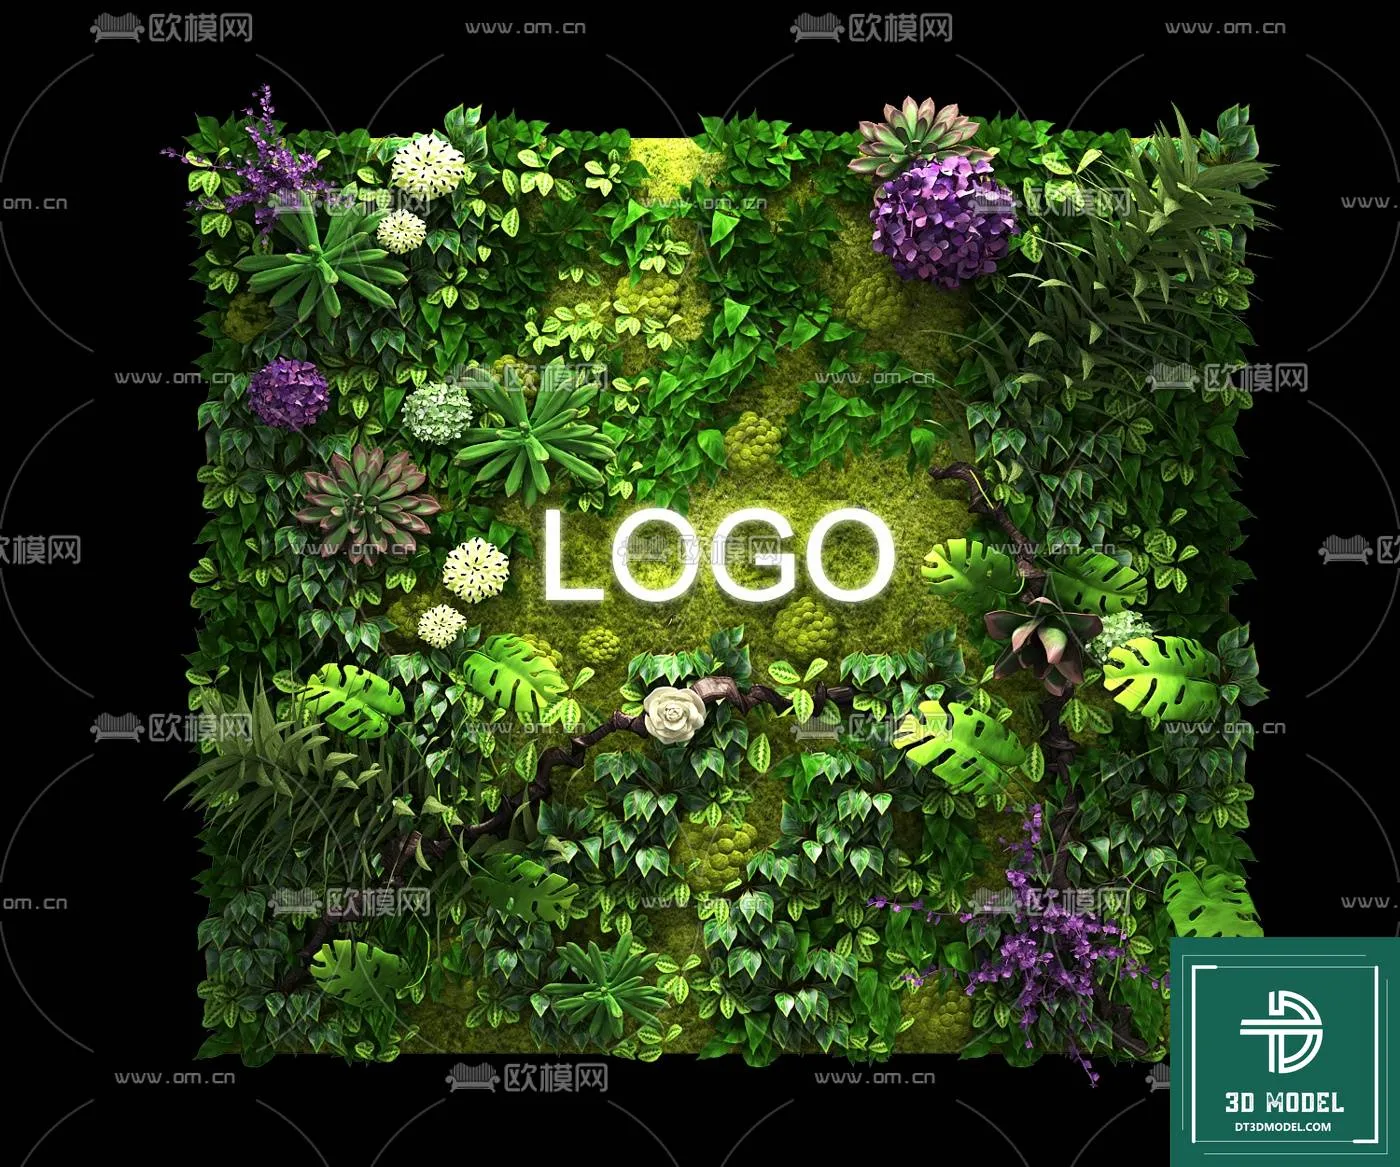 VERTICAL GARDEN – FITOWALL PLANT 3D MODEL – 038